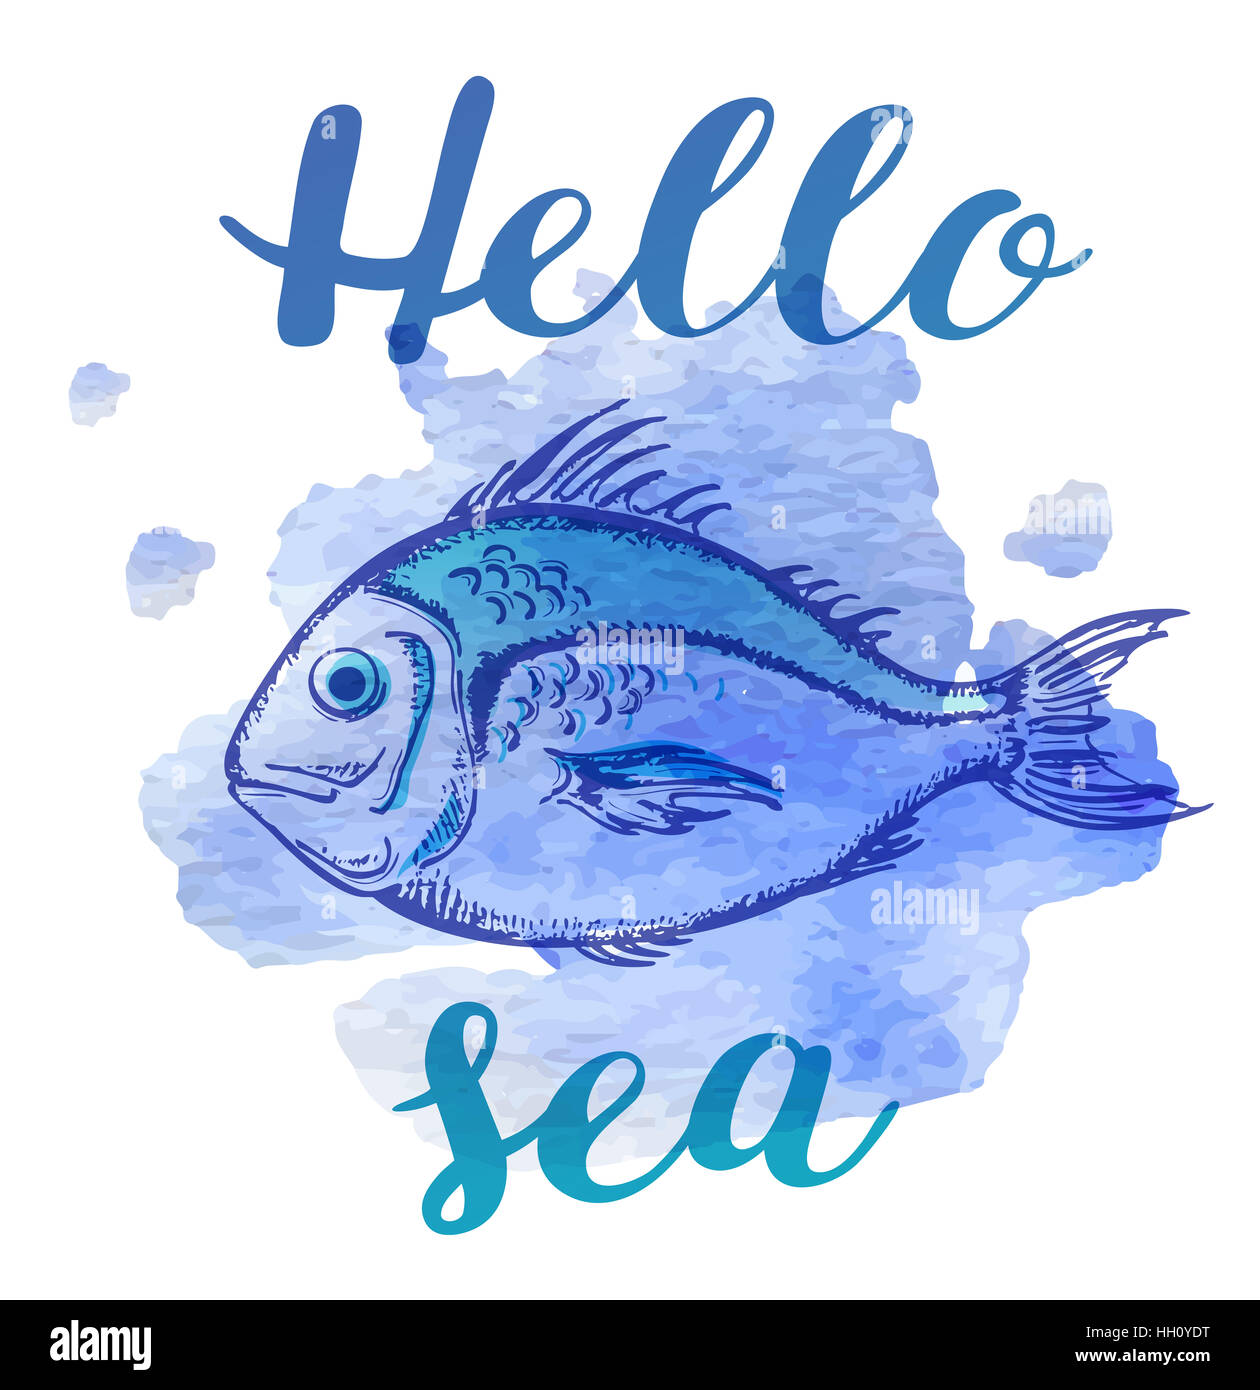 Blob Fish Stock Illustrations – 560 Blob Fish Stock Illustrations, Vectors  & Clipart - Dreamstime